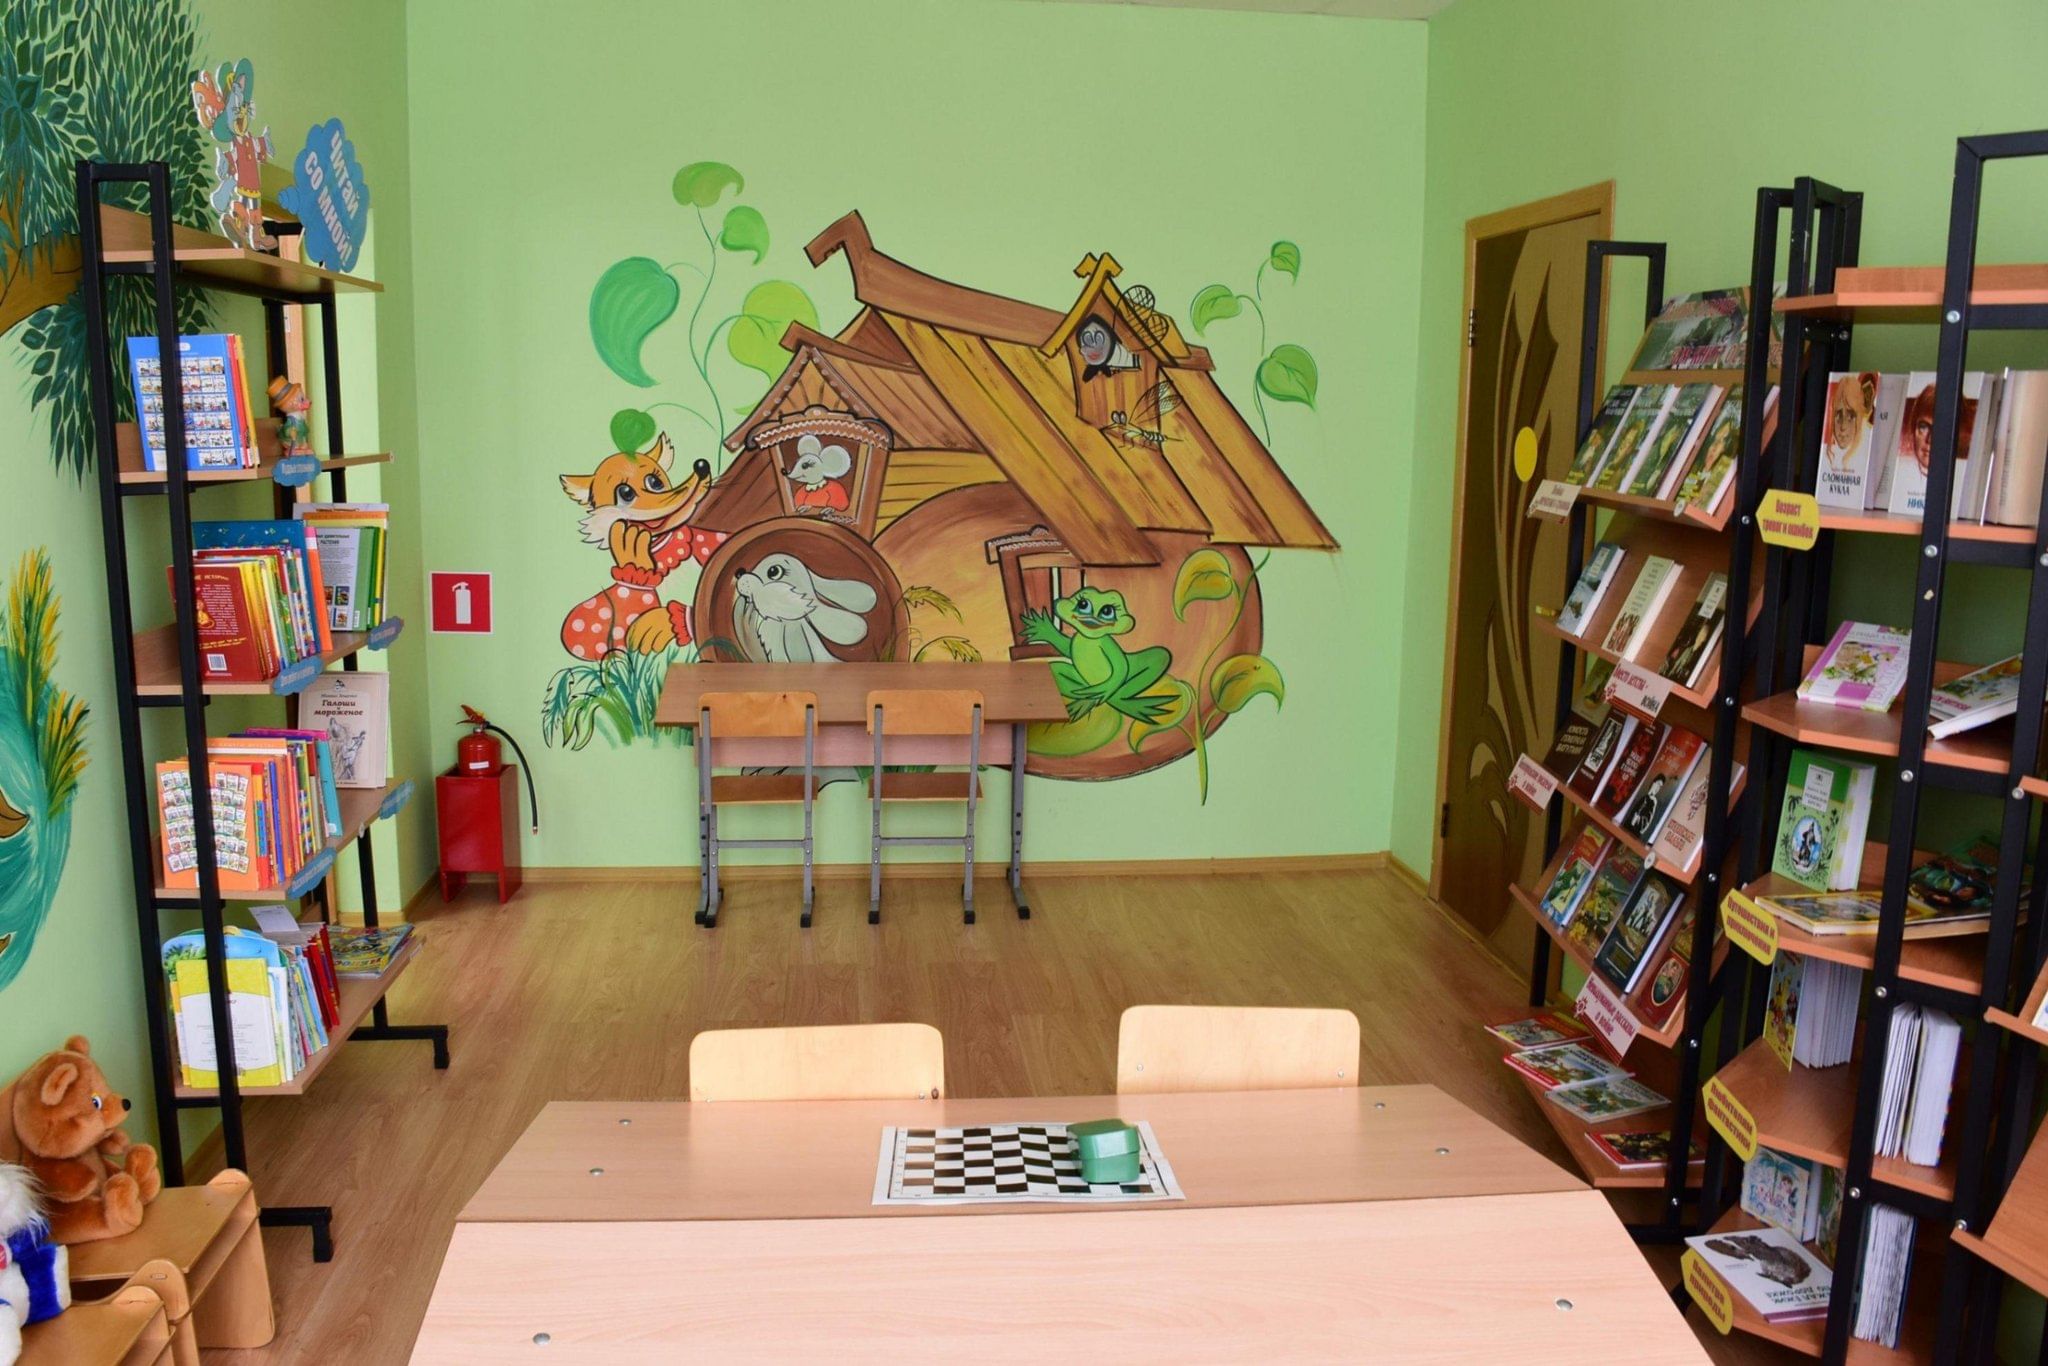 Библиотека Бажова Лесной. Модельная детская библиотека в стиле леса. Город Лесной библиотека Бажова. Библиотека на Бажова 25. Бажова лесной